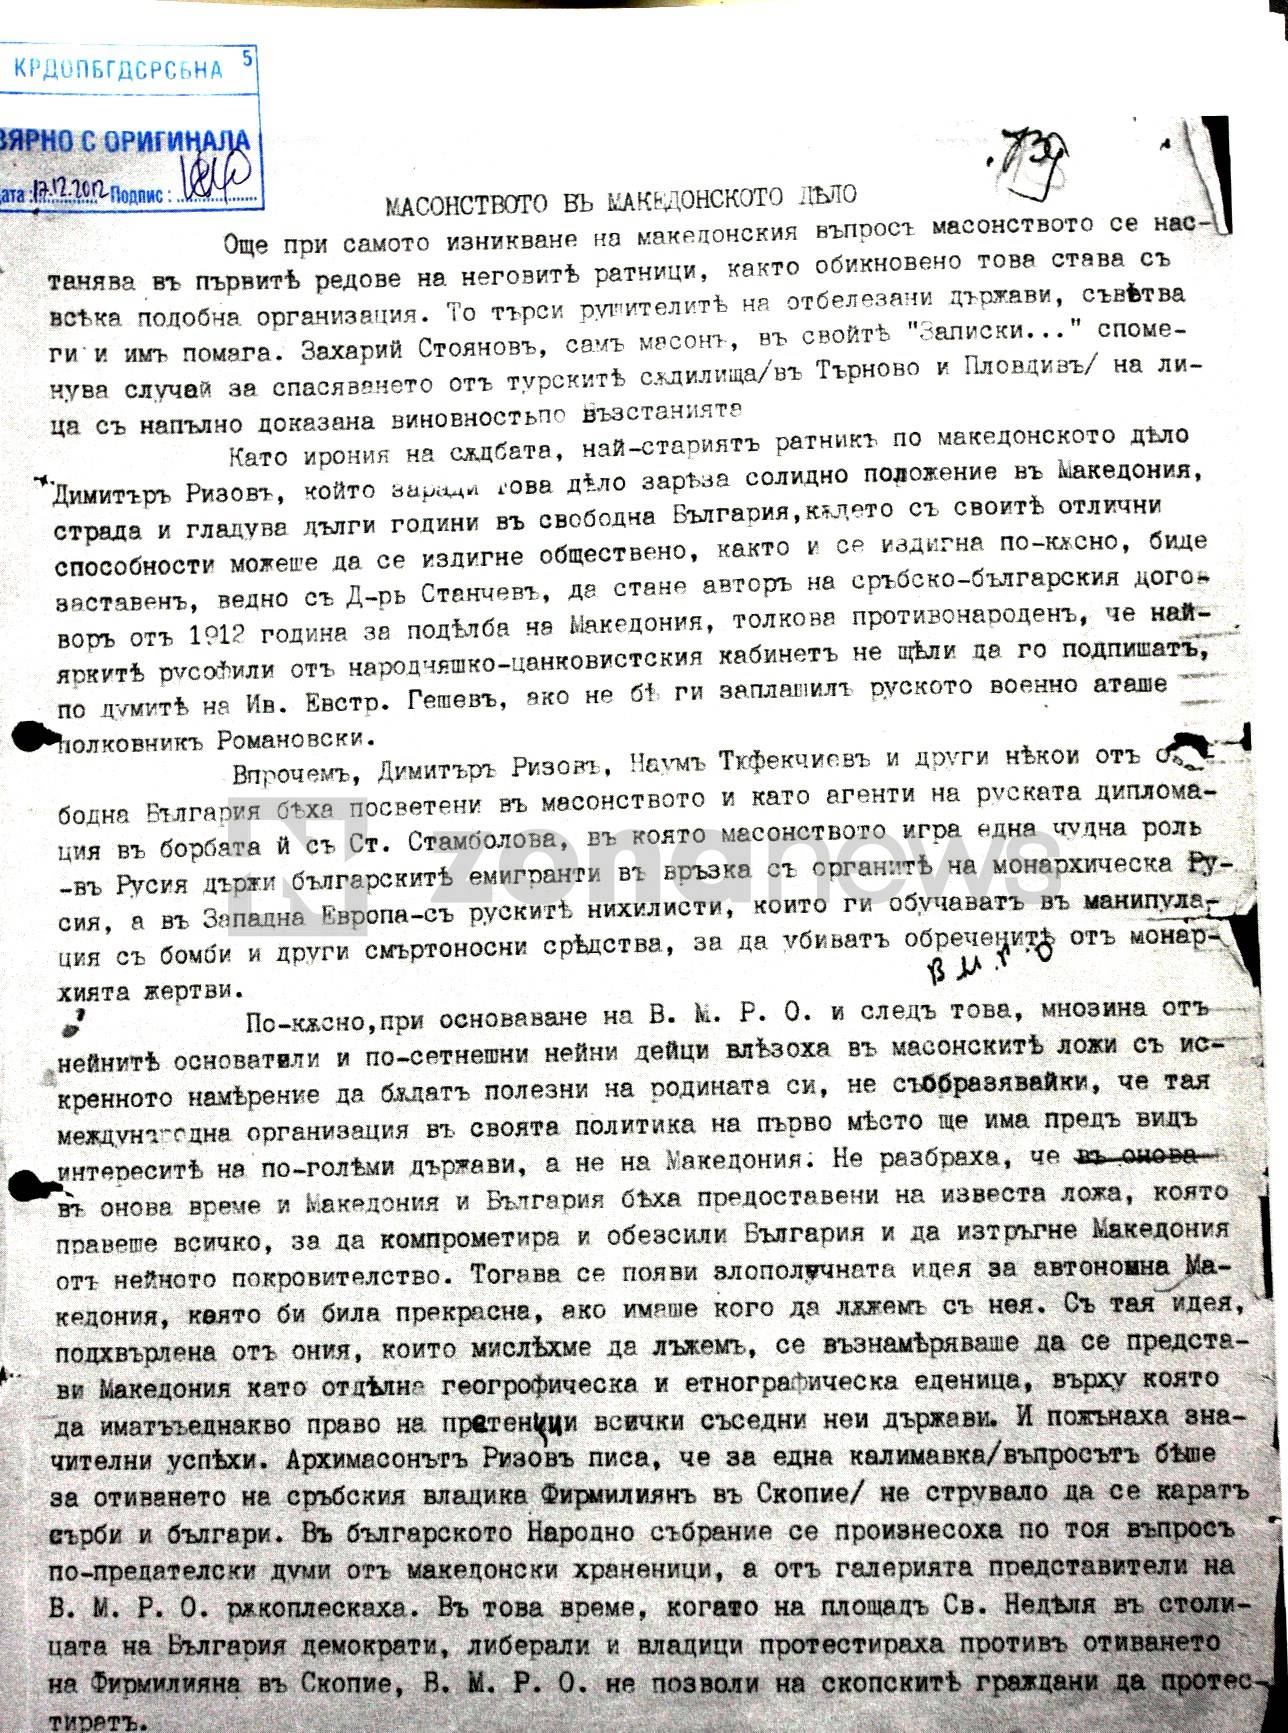 Документи от архива на КОМДОС за българското масонство (2)